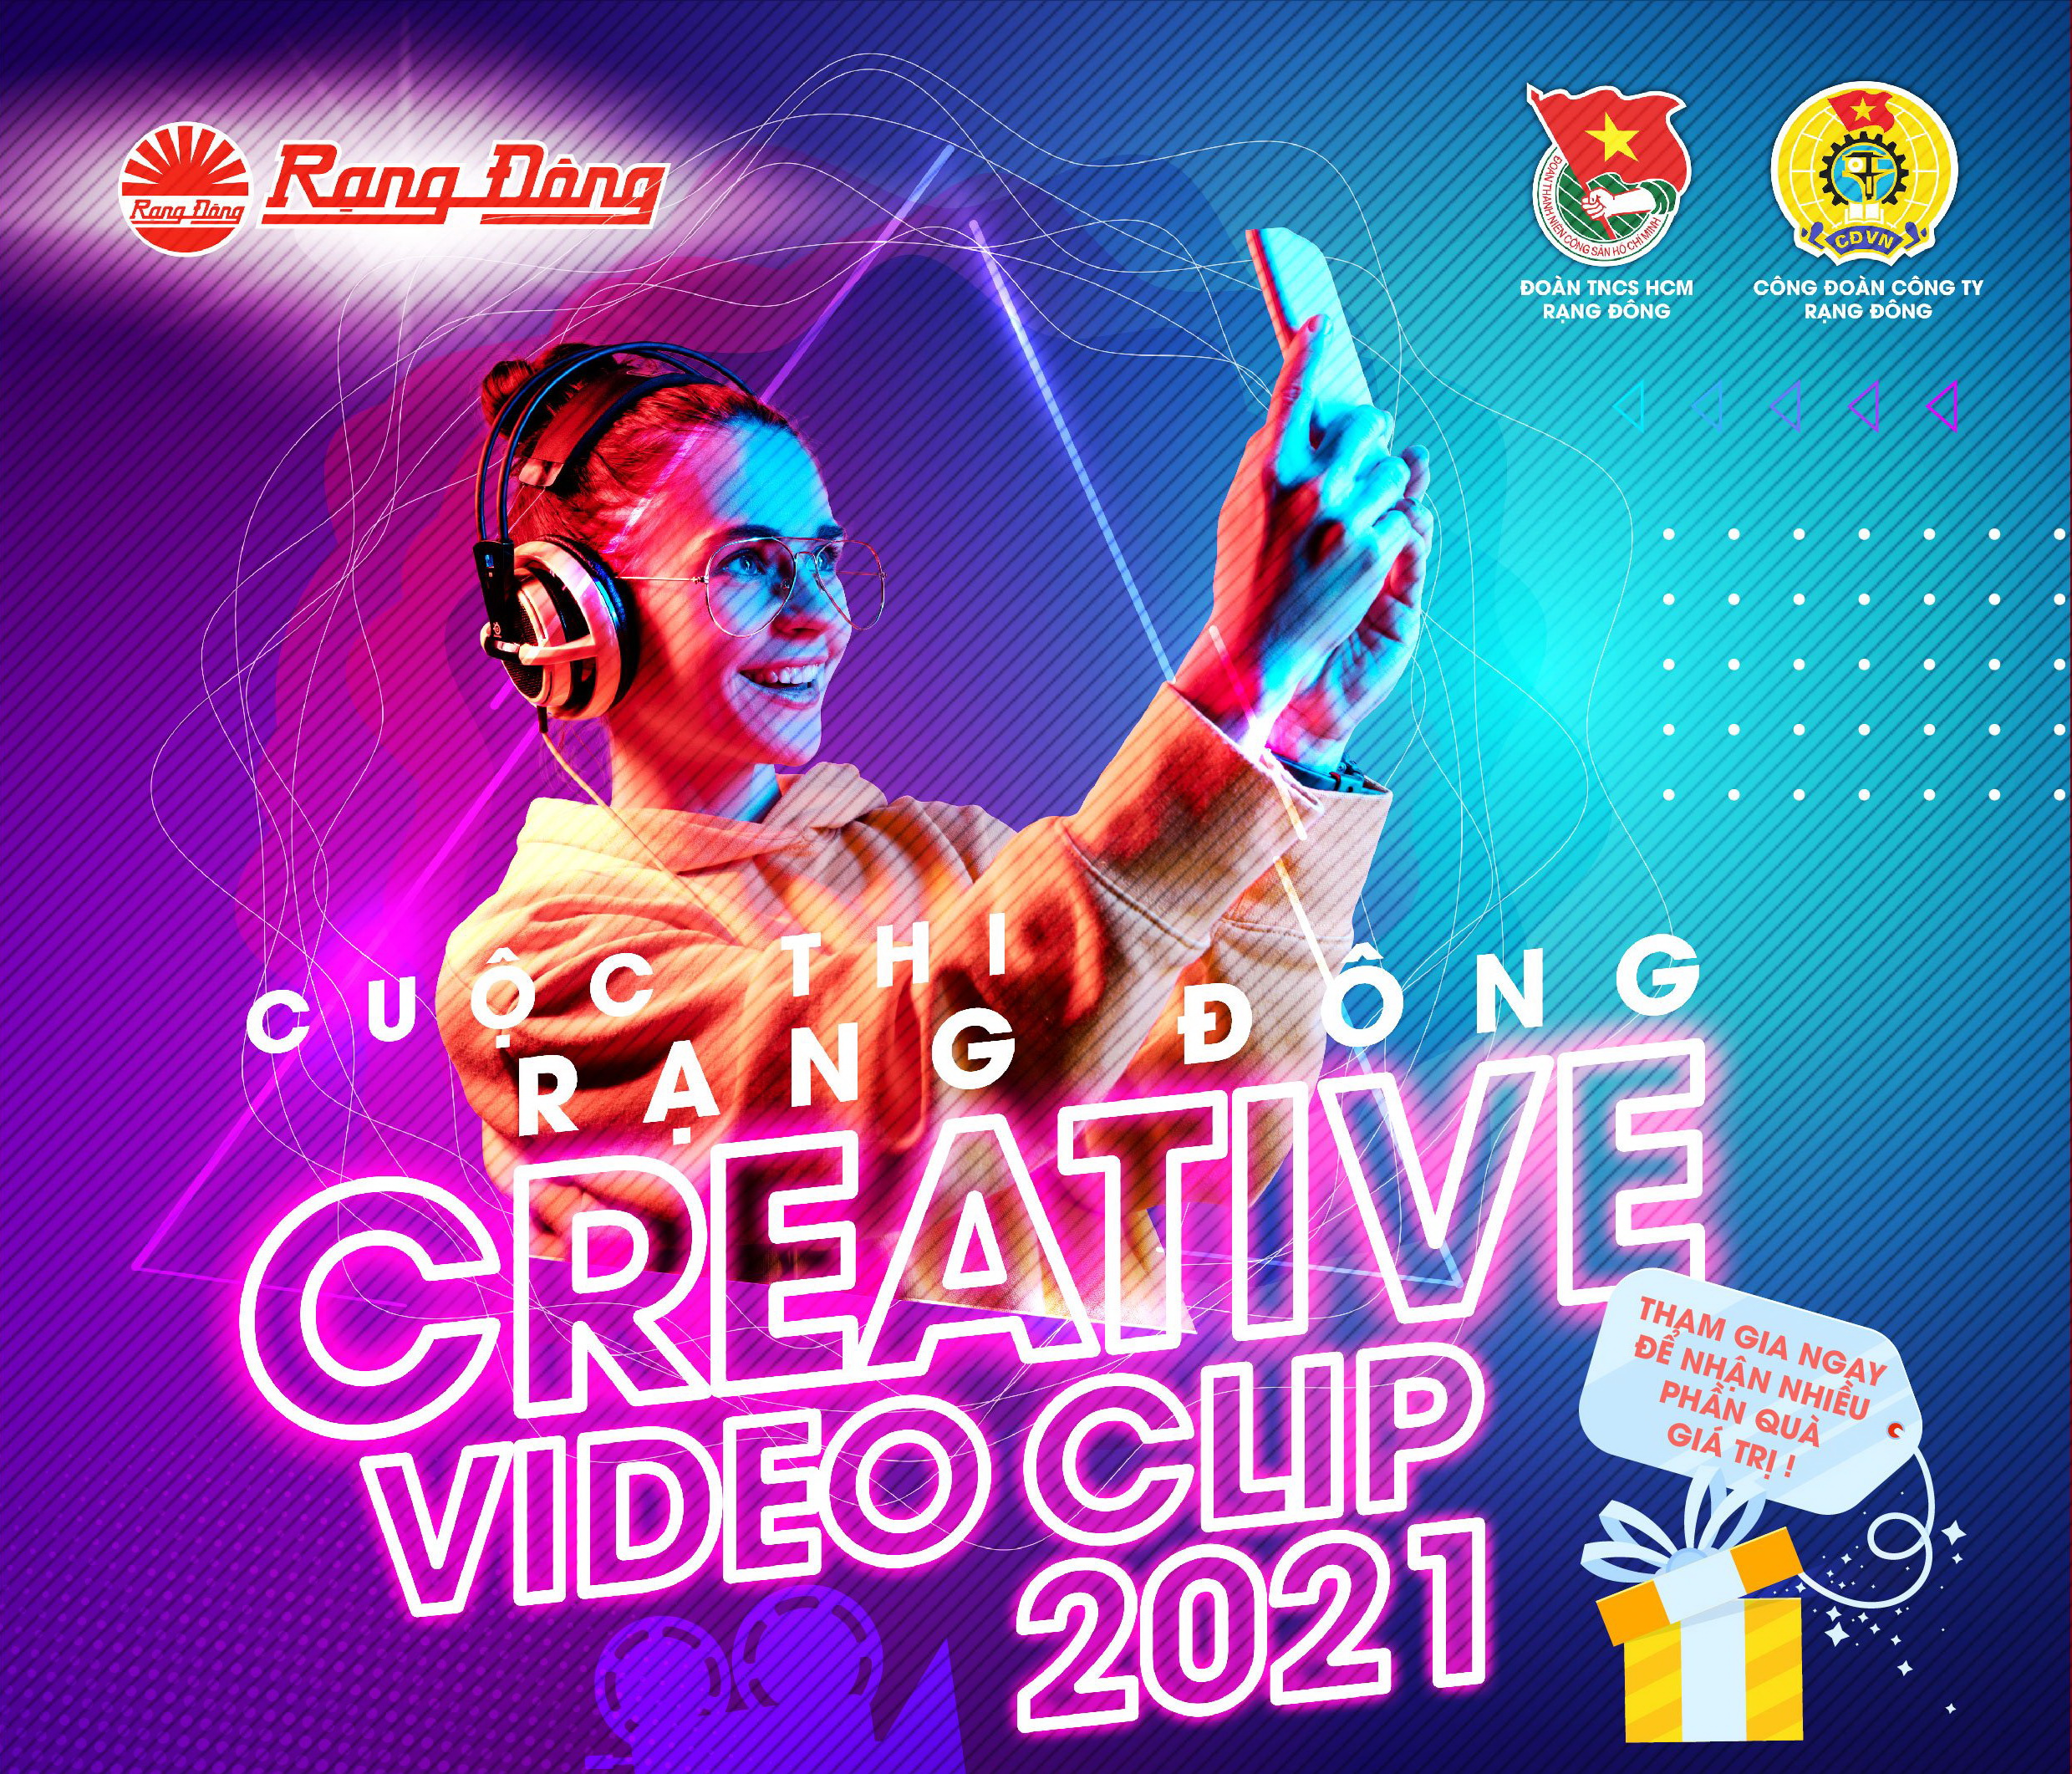 TỔ CHỨC CUỘC THI “RẠNG ĐÔNG CREATIVE VIDEO CLIP 2021”